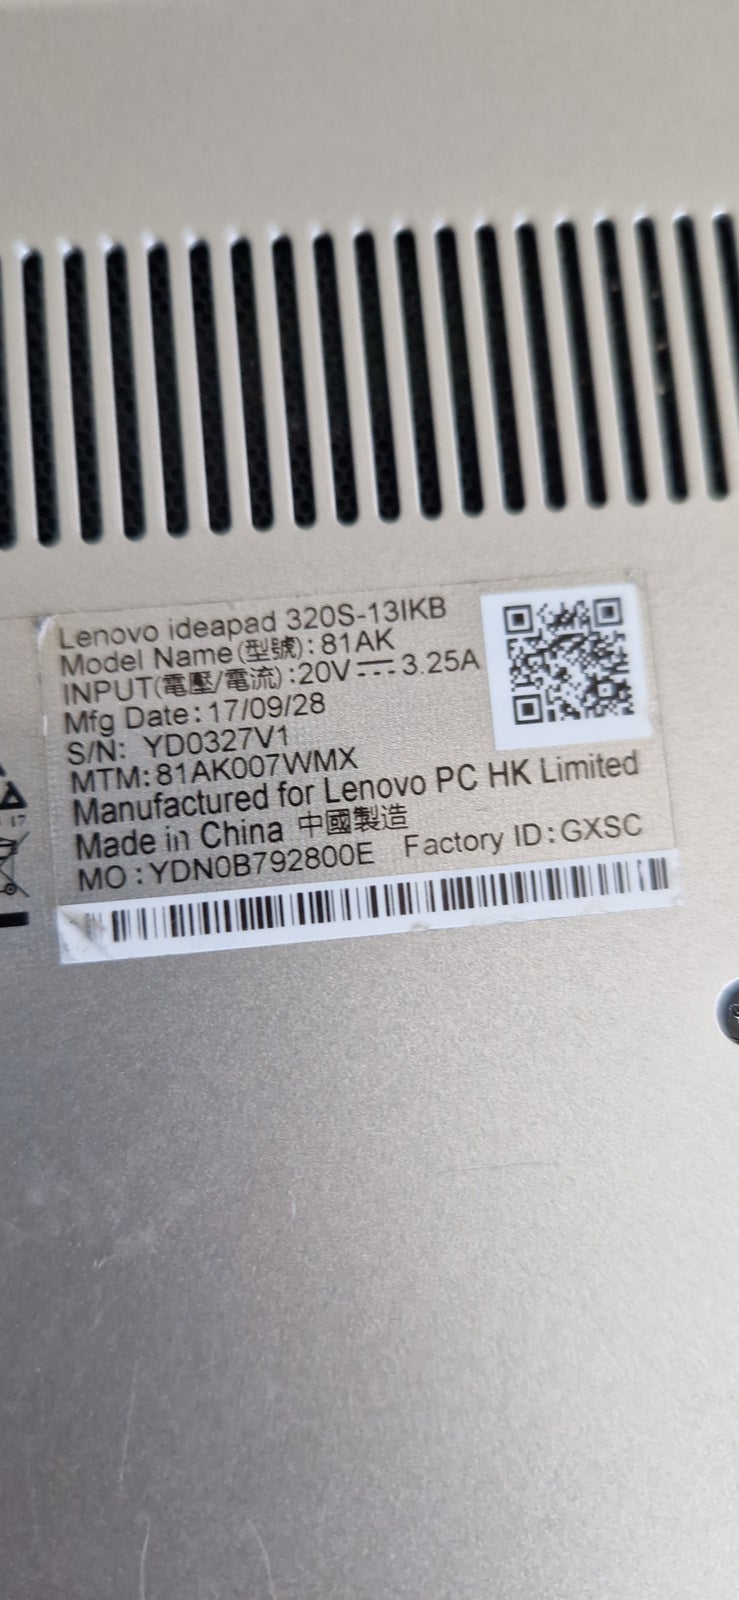 Lenovo Ideapad 320s 13ikb, 3.40 GHz, 8 GB ram